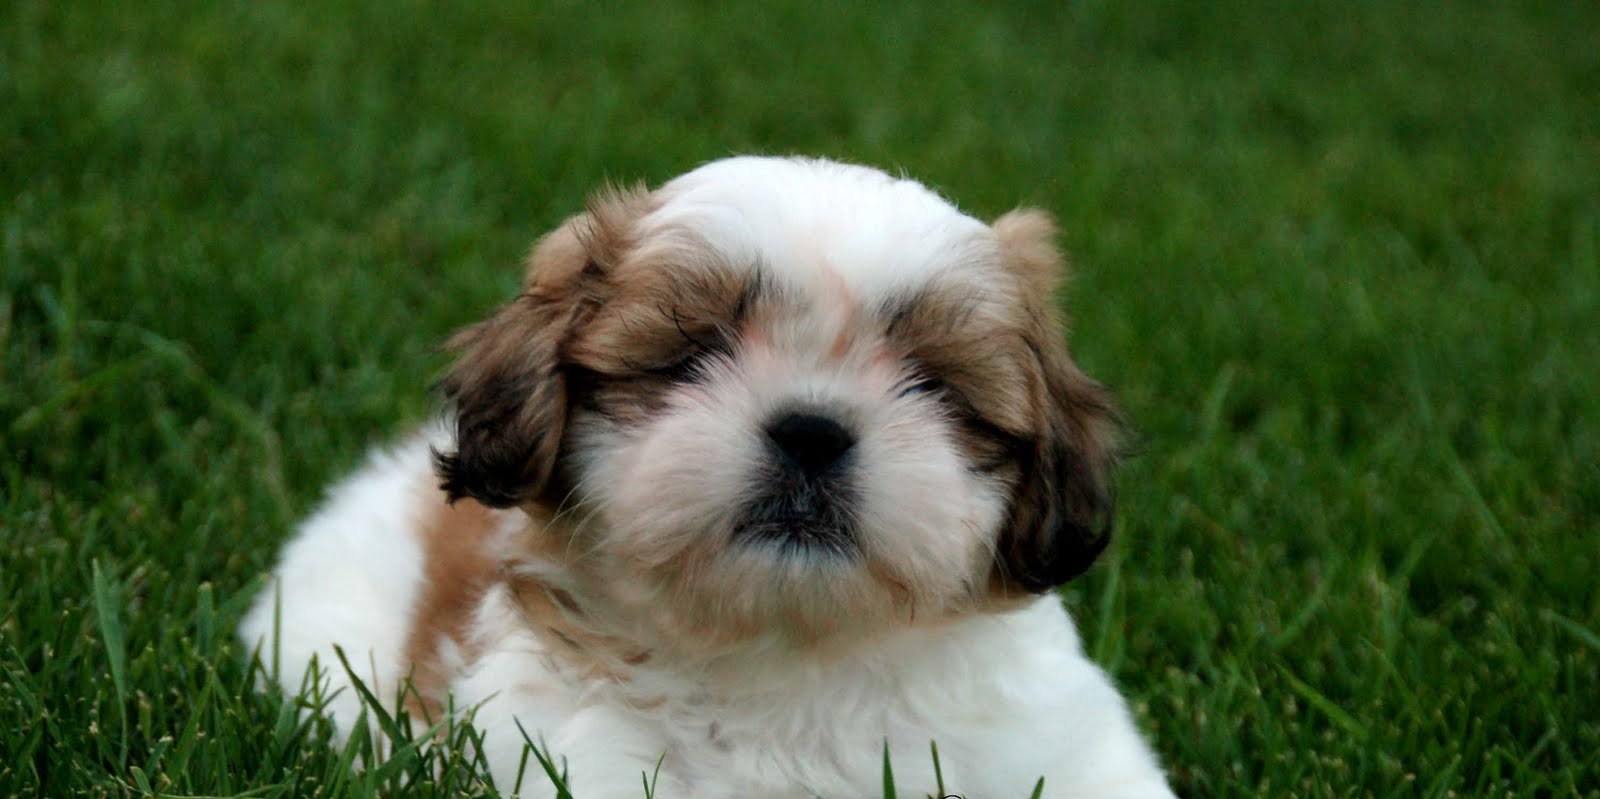 Shih Tzu Puppy Sitting On Grass